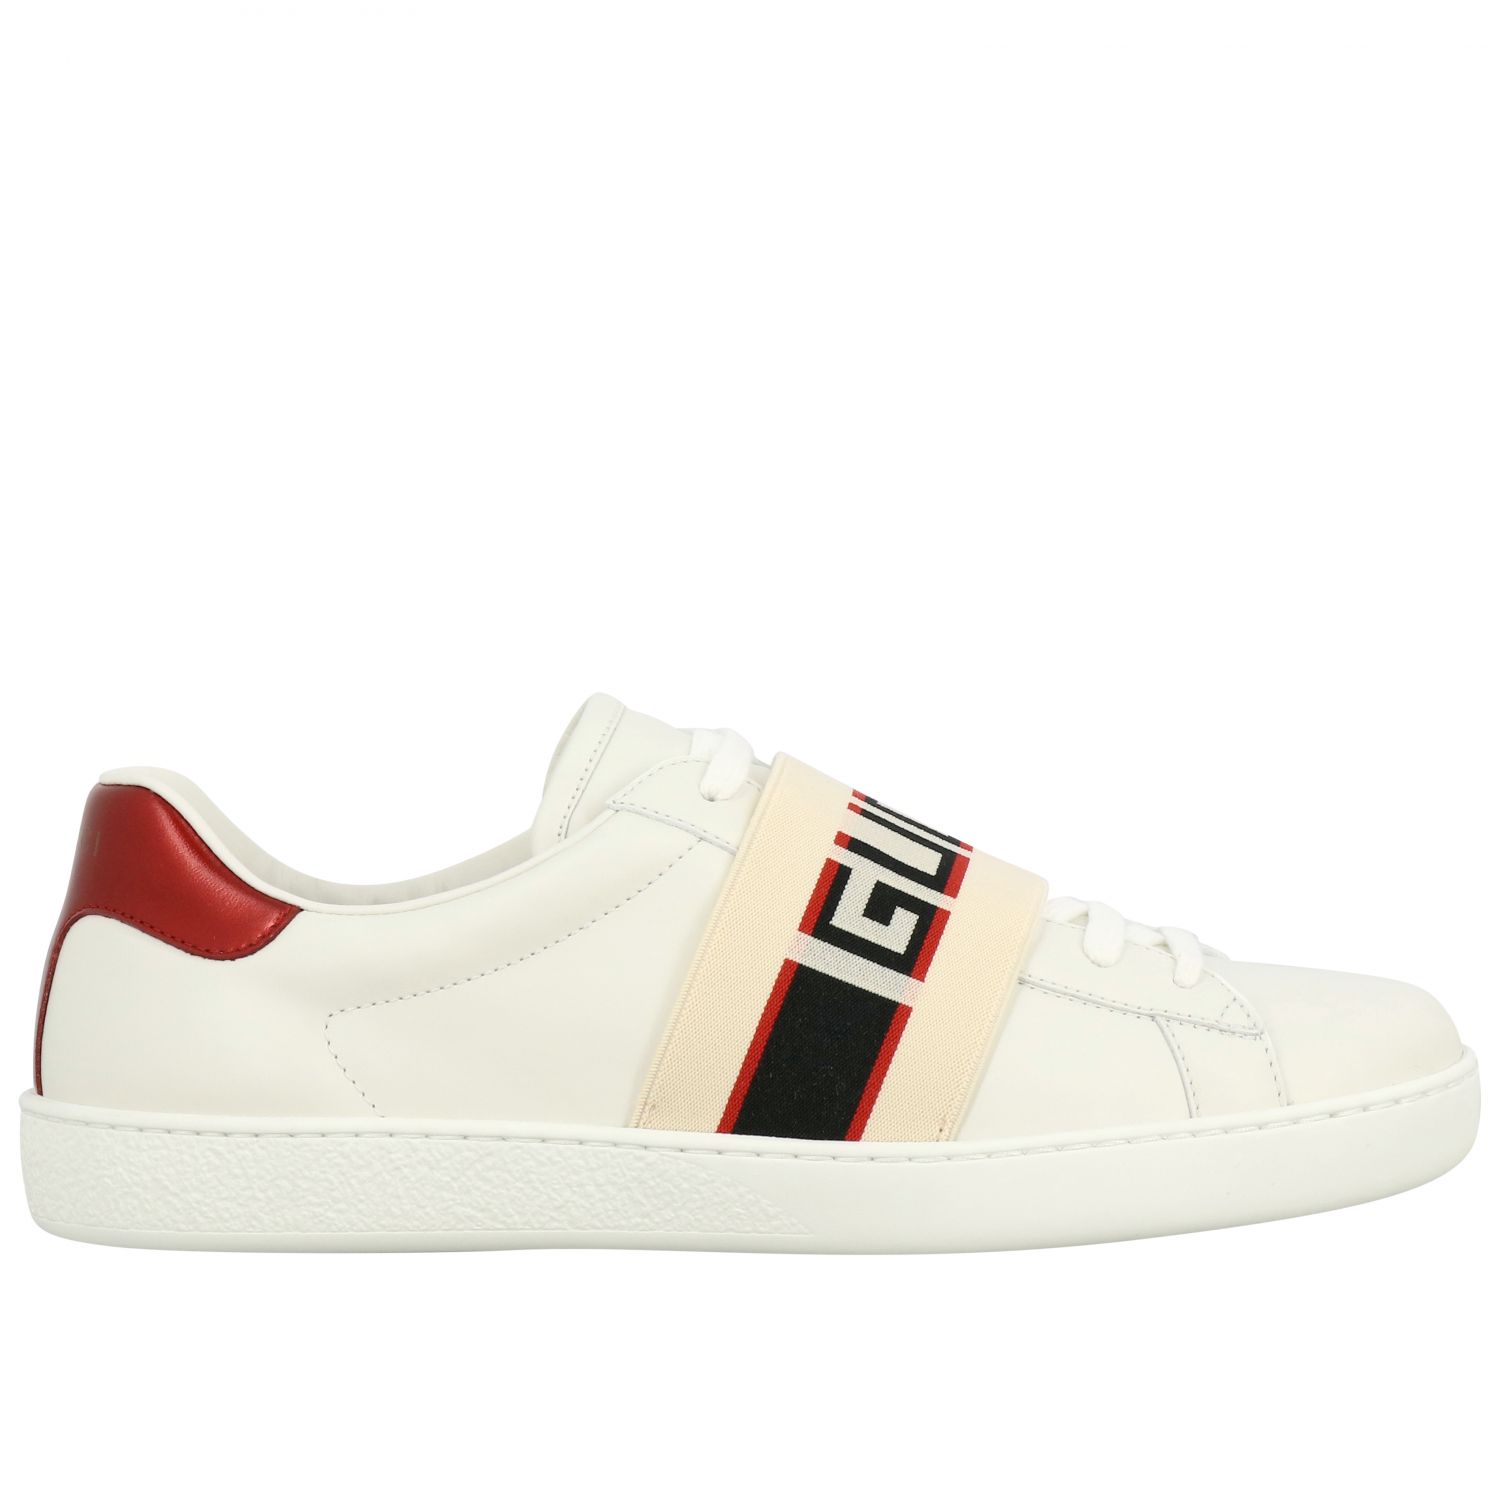 GUCCI: New Ace zapatillas de cuero banda elástica, | Gucci 523469 0FIV0 en línea GIGLIO.COM